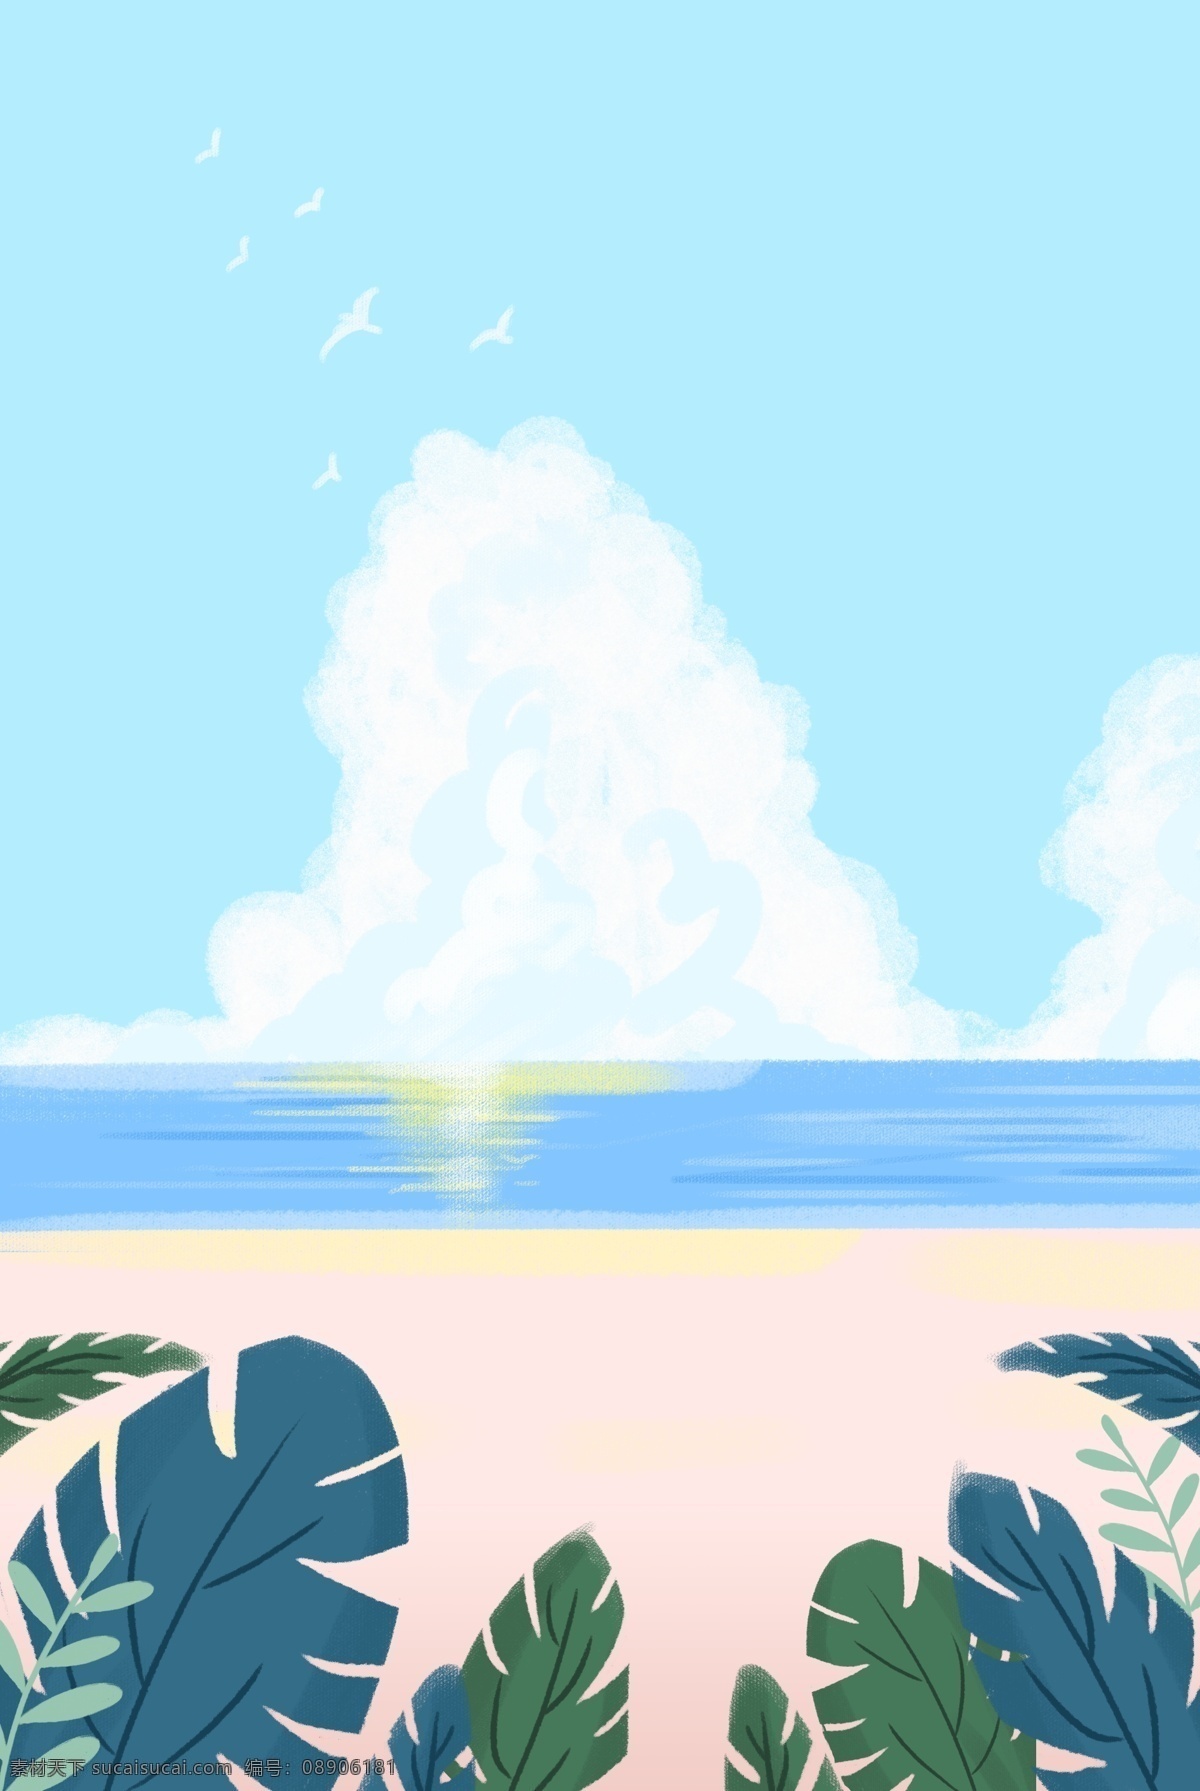 清新 夏日 海边 风景 螃蟹 海鸥 沙滩 背景 草